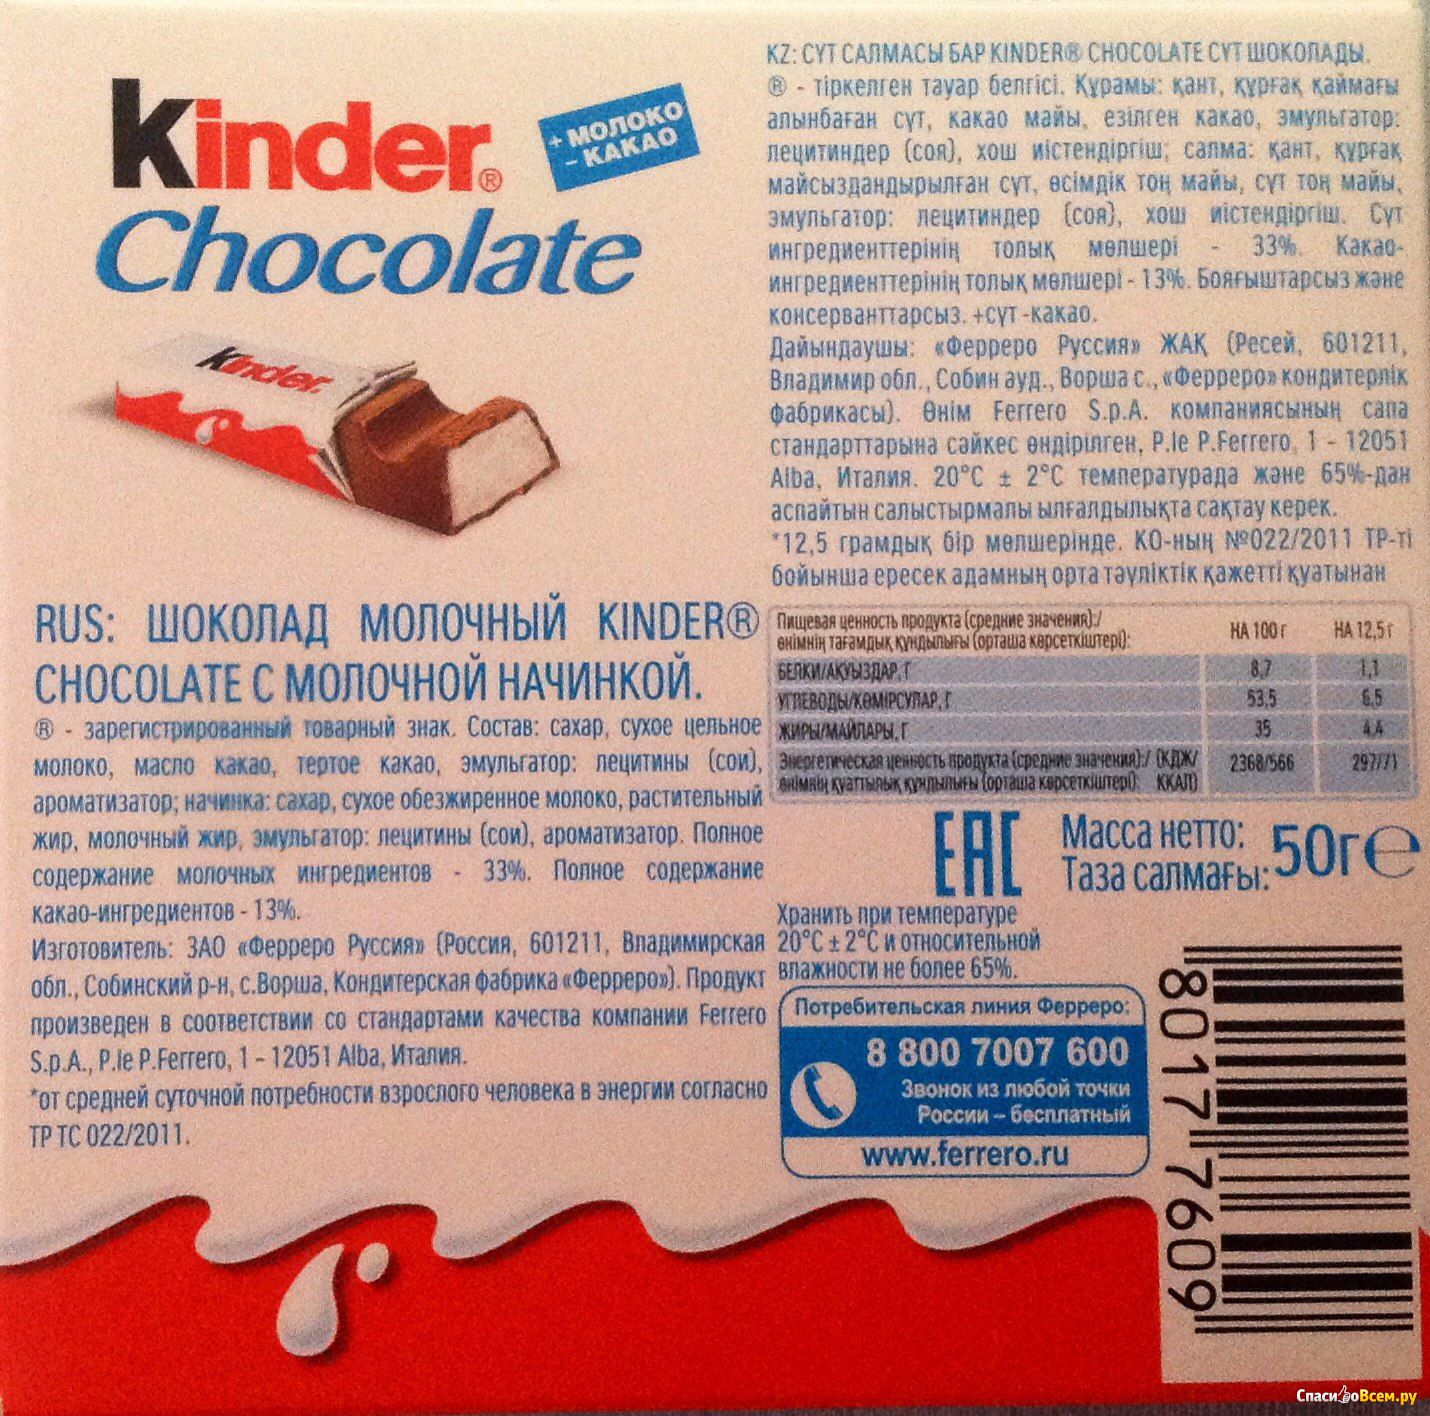 Сколько шоколада в киндере. Киндер шоколад макси вес 1 шоколадки. Киндер шоколад 4 калорийность. Киндер шоколад калорийность 100 грамм.